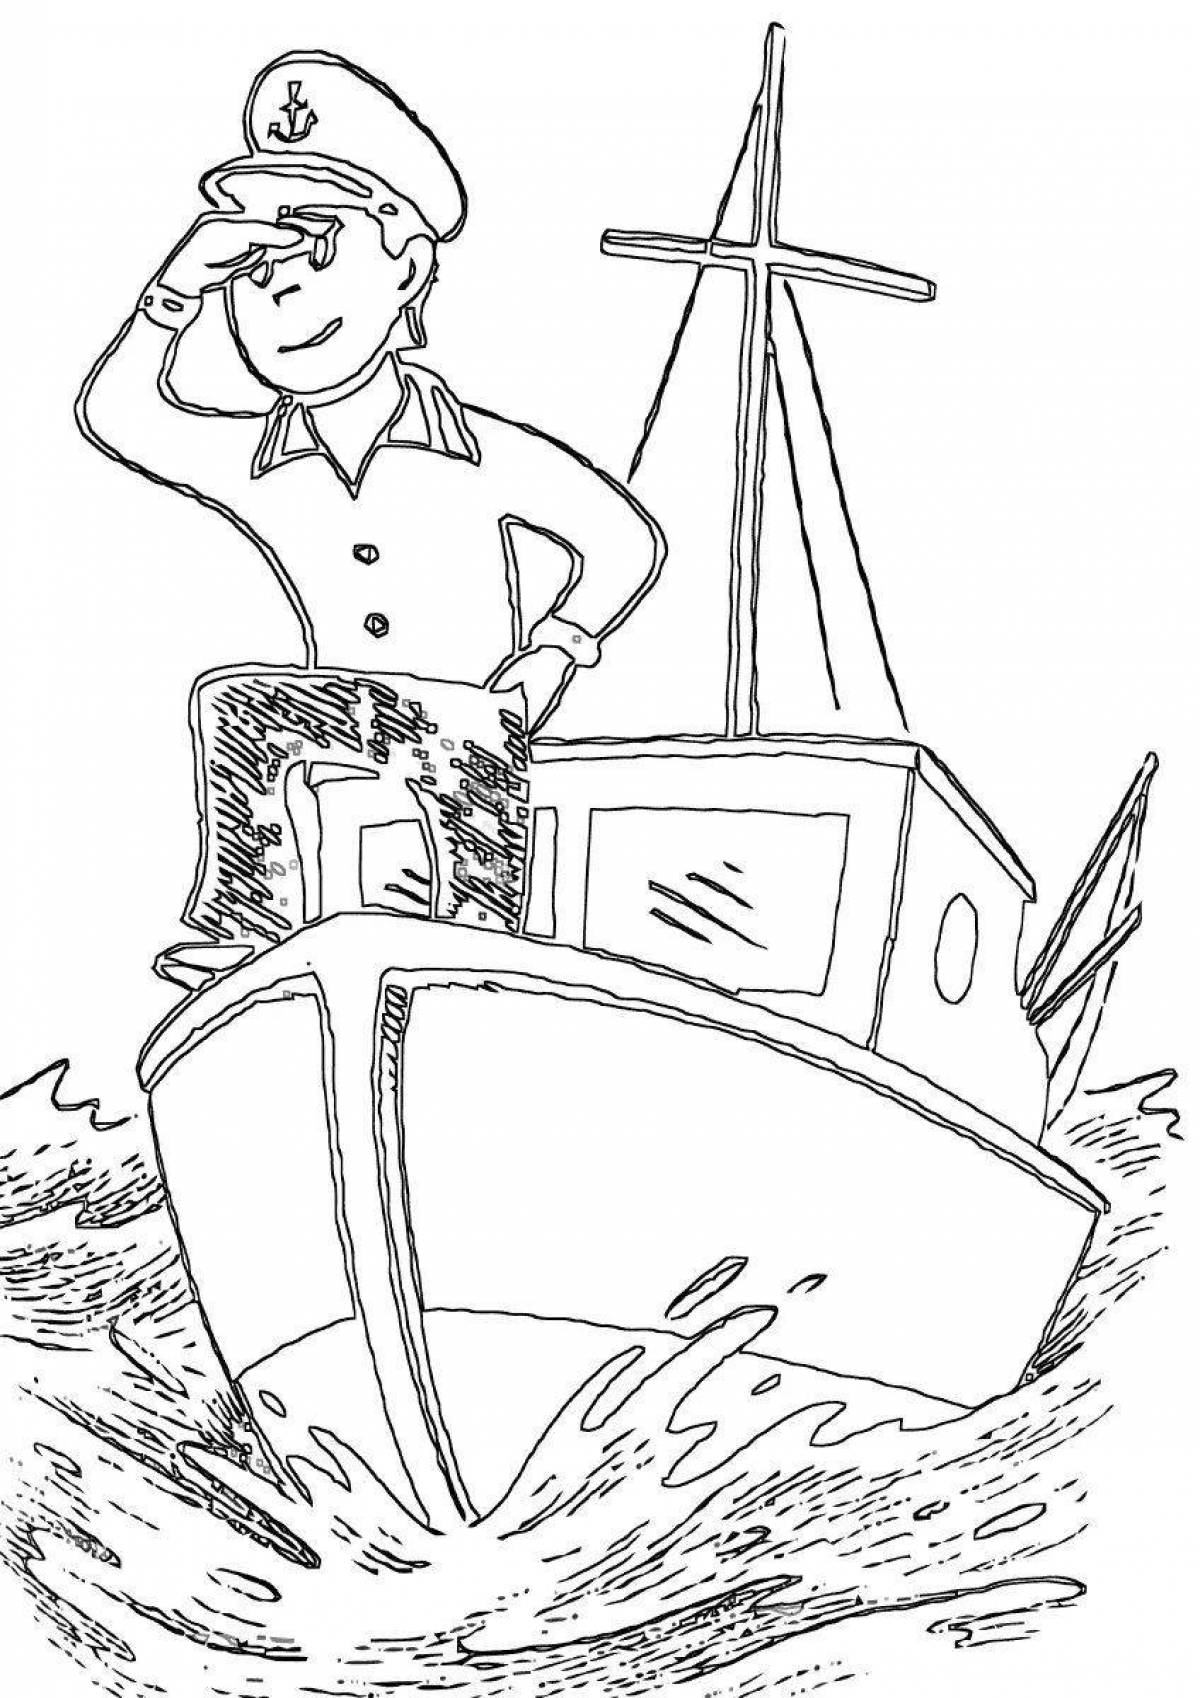 Моряк раскраска для детей